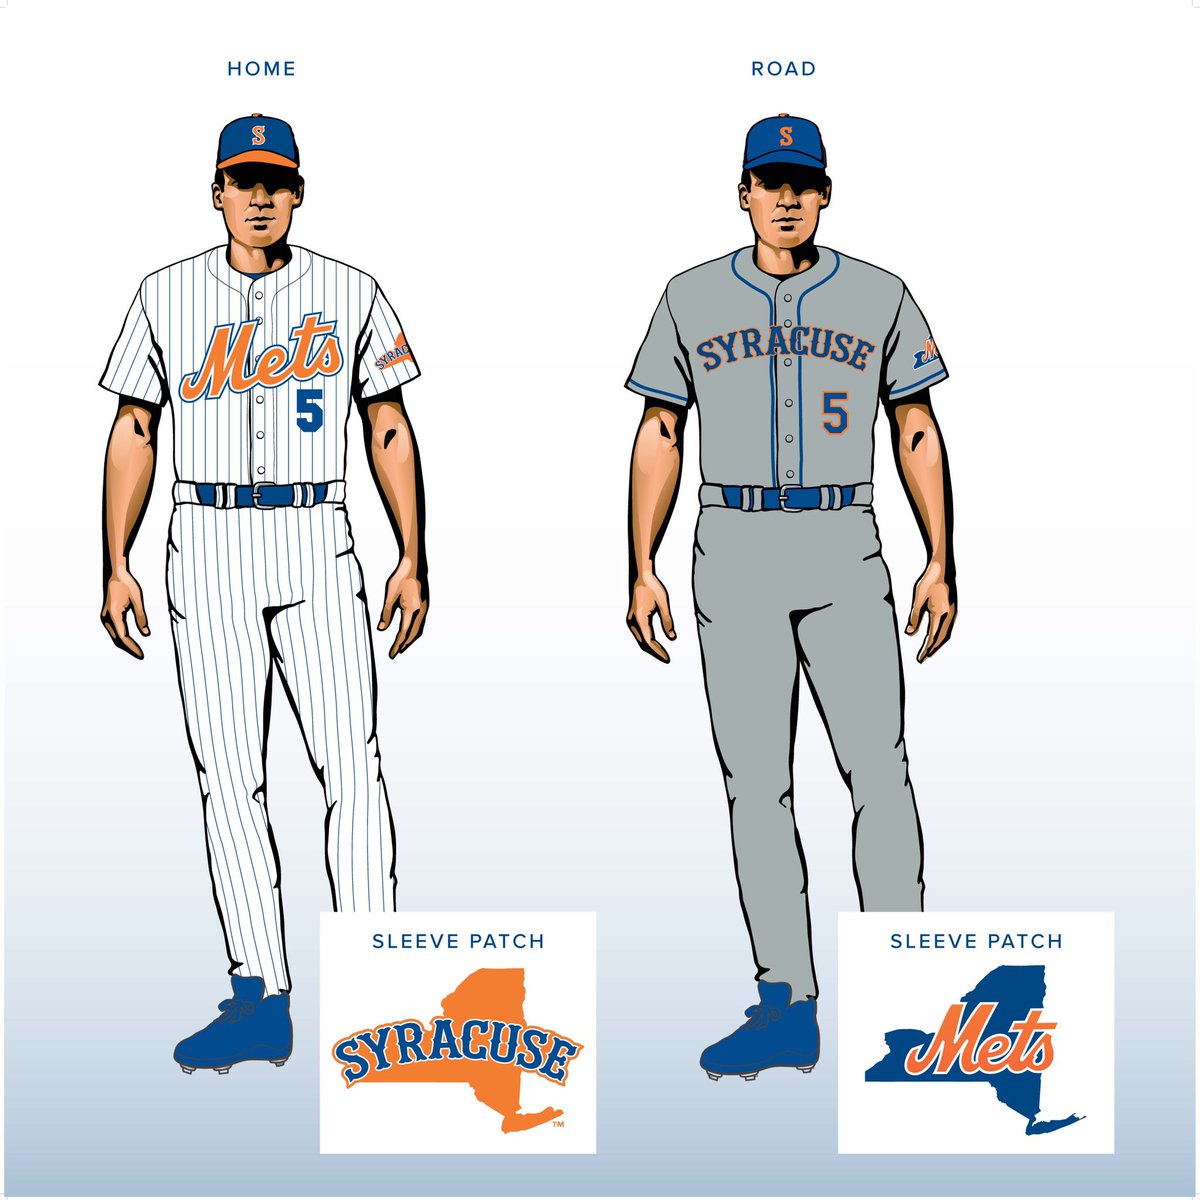 Syracuse Mets uniforms